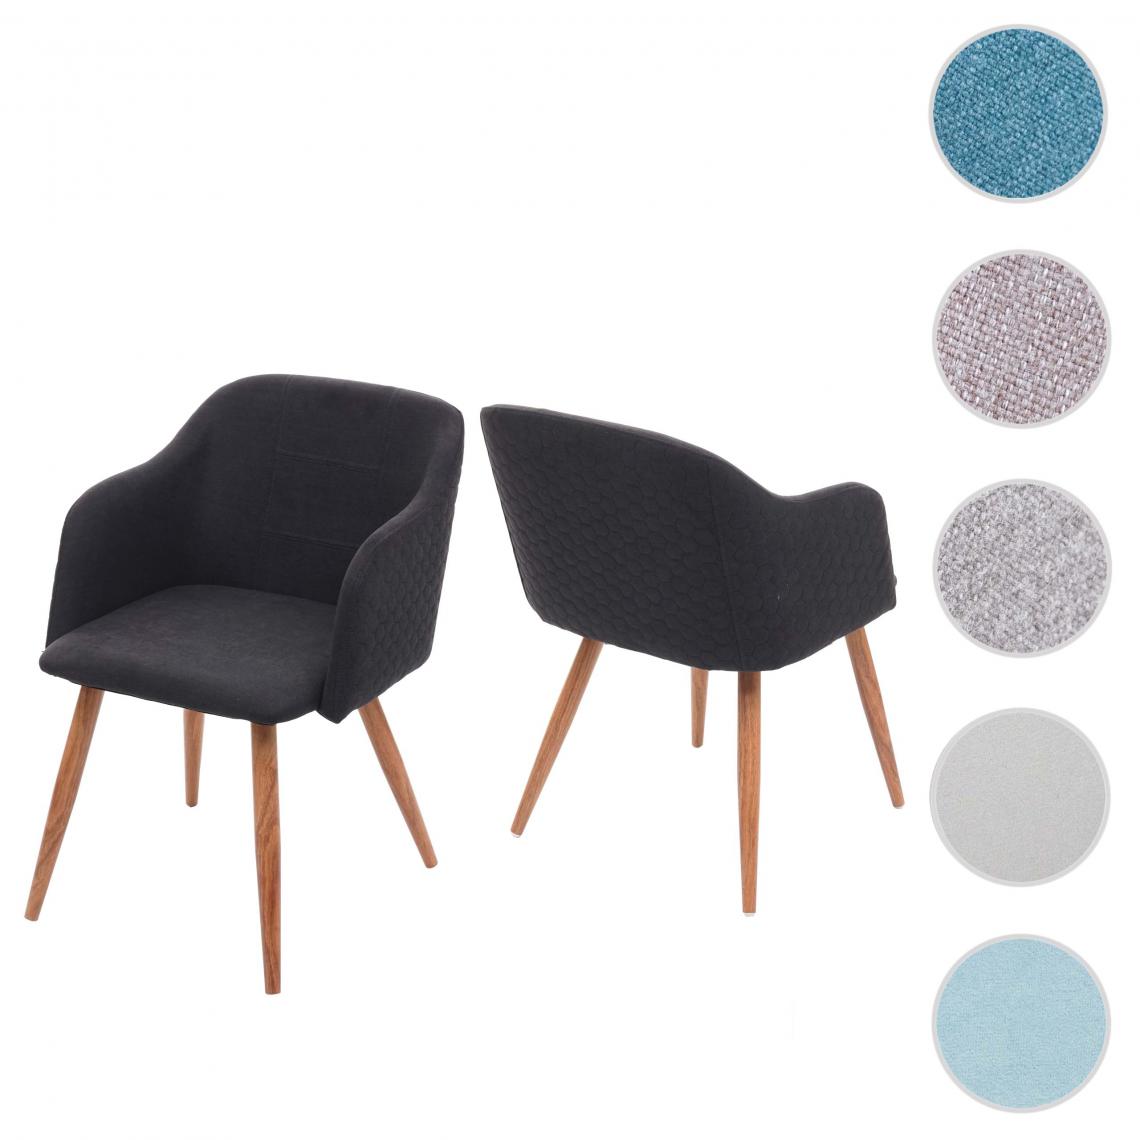 Mendler - 2x chaise de salle à manger HWC-D71, chaise de cuisine, design rétro, accoudoirs, tissu ~ gris anthracite - Chaises